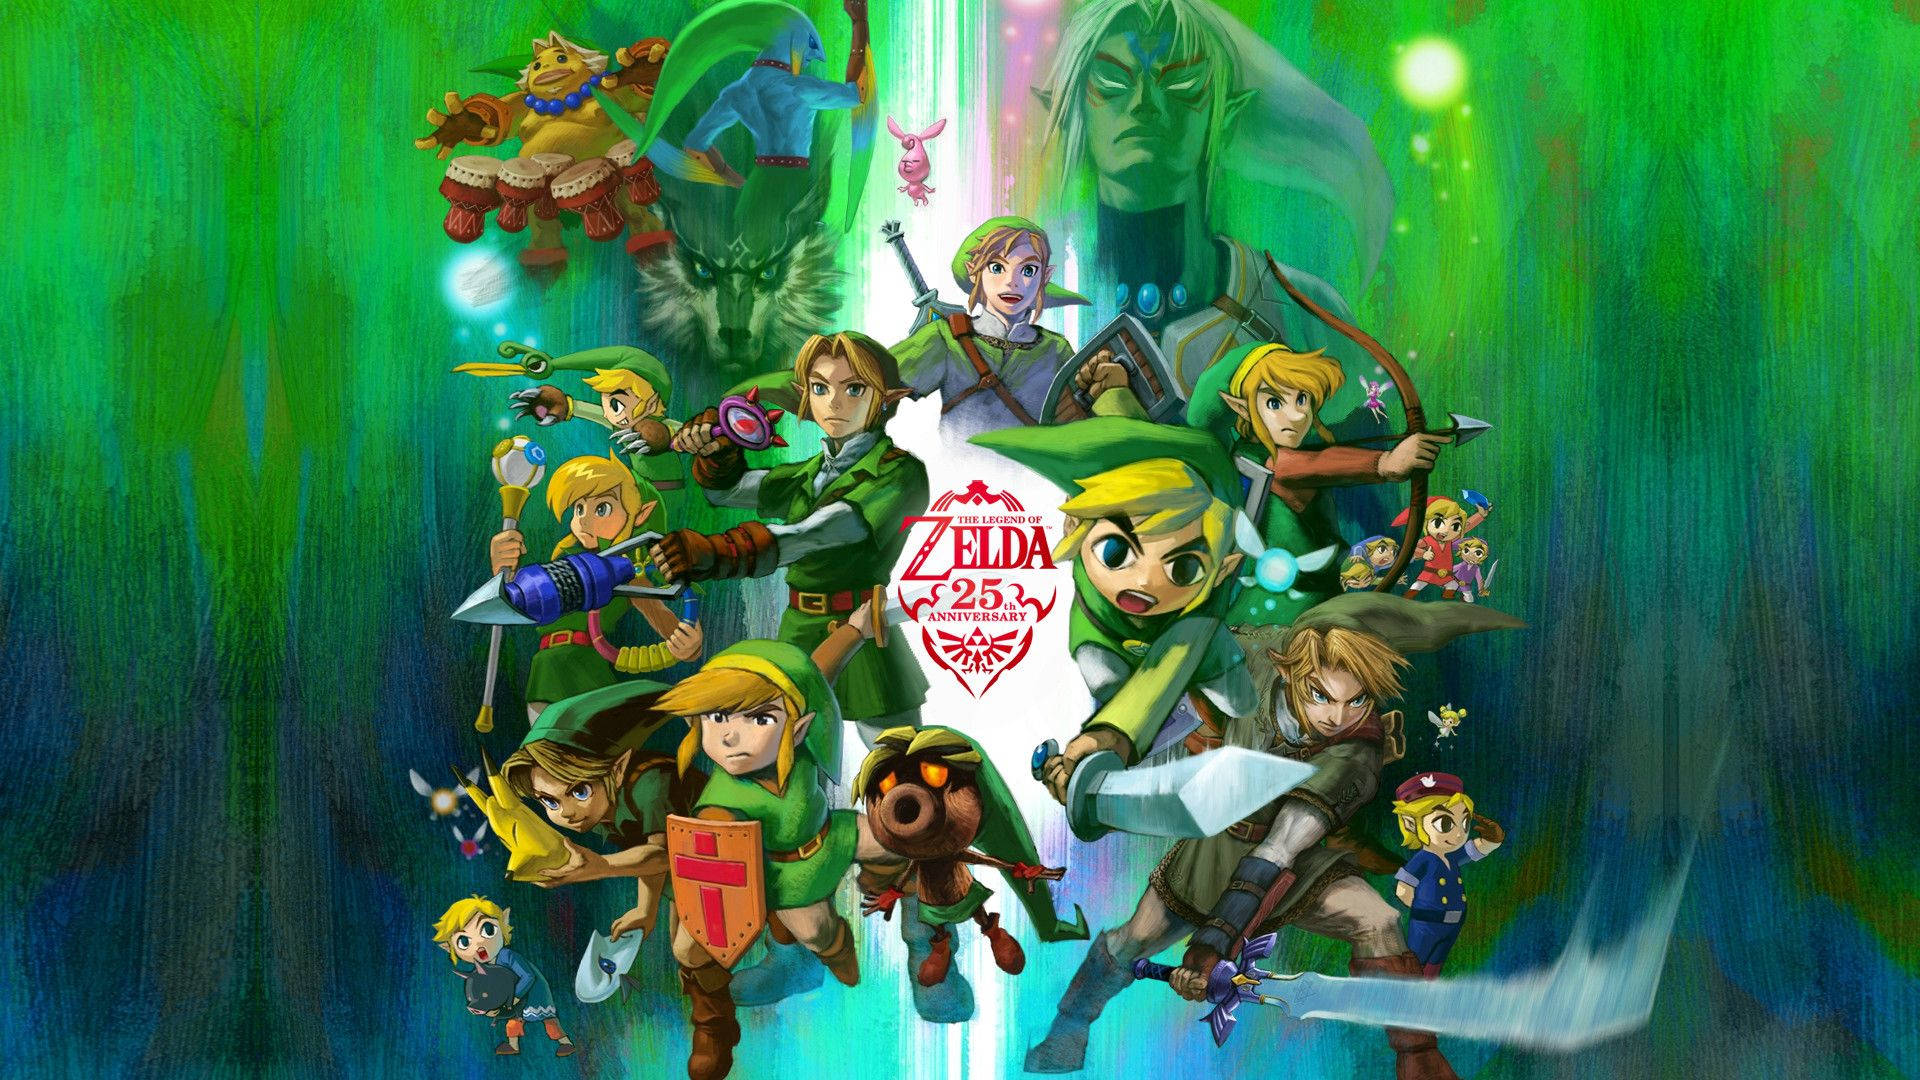 100+] Legend Of Zelda Wallpapers | Wallpapers.Com